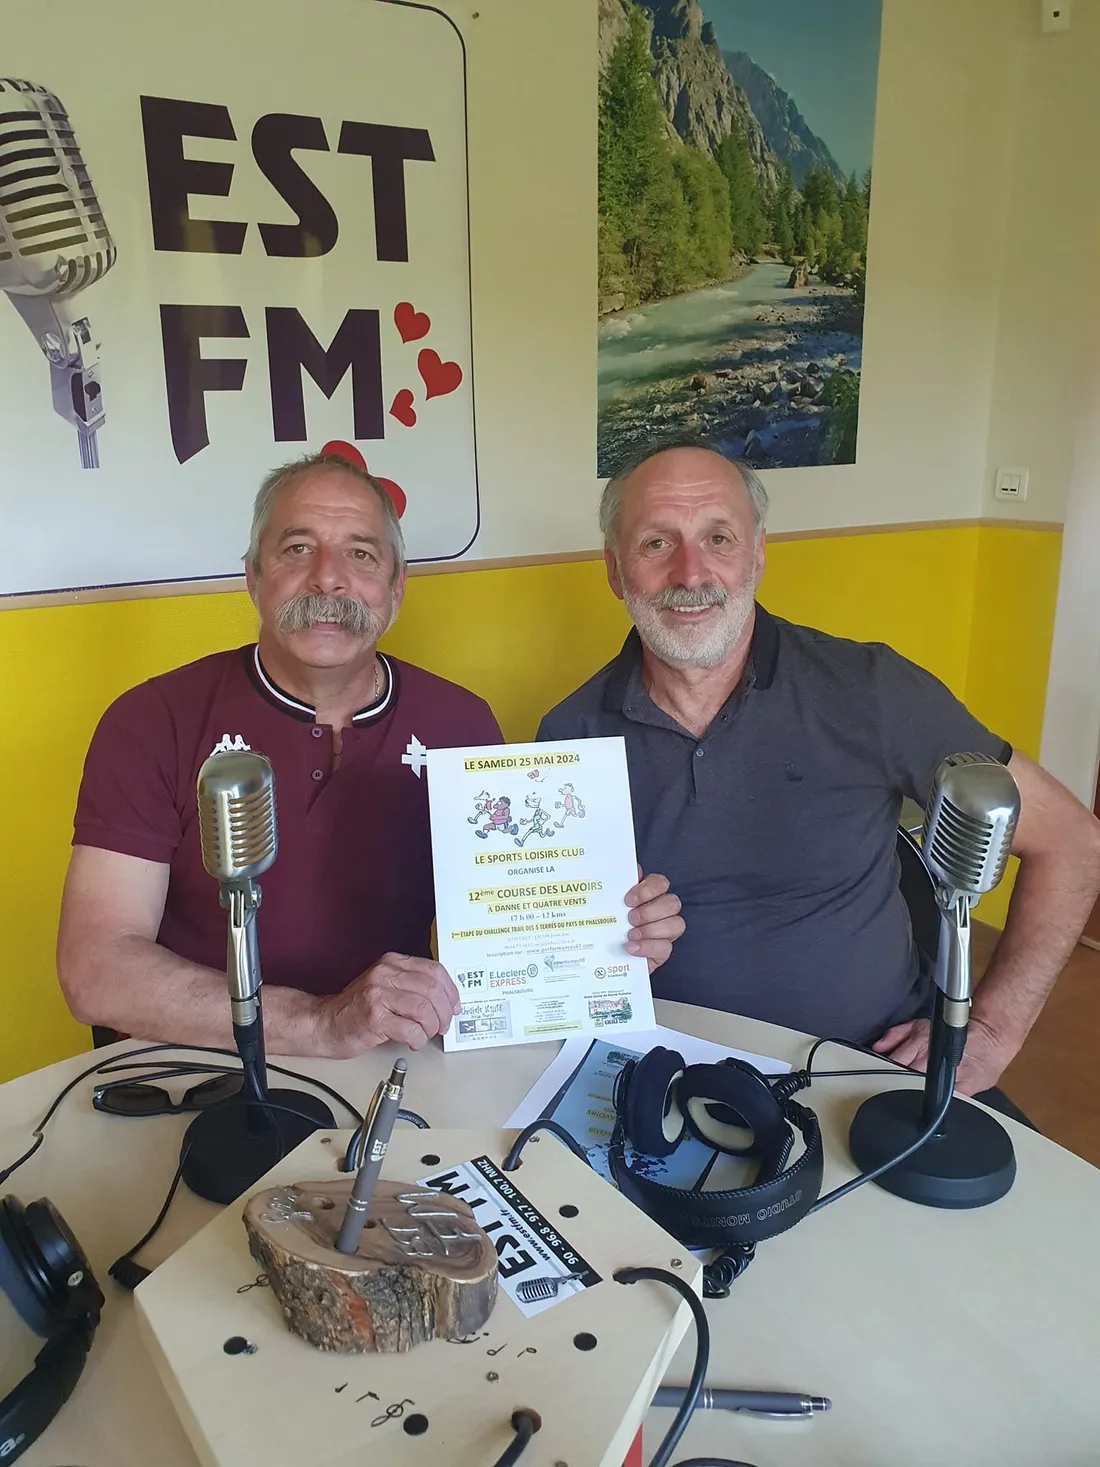 Jean-Luc et Sébastien JACOB sur EST FM (course des lavoirs)